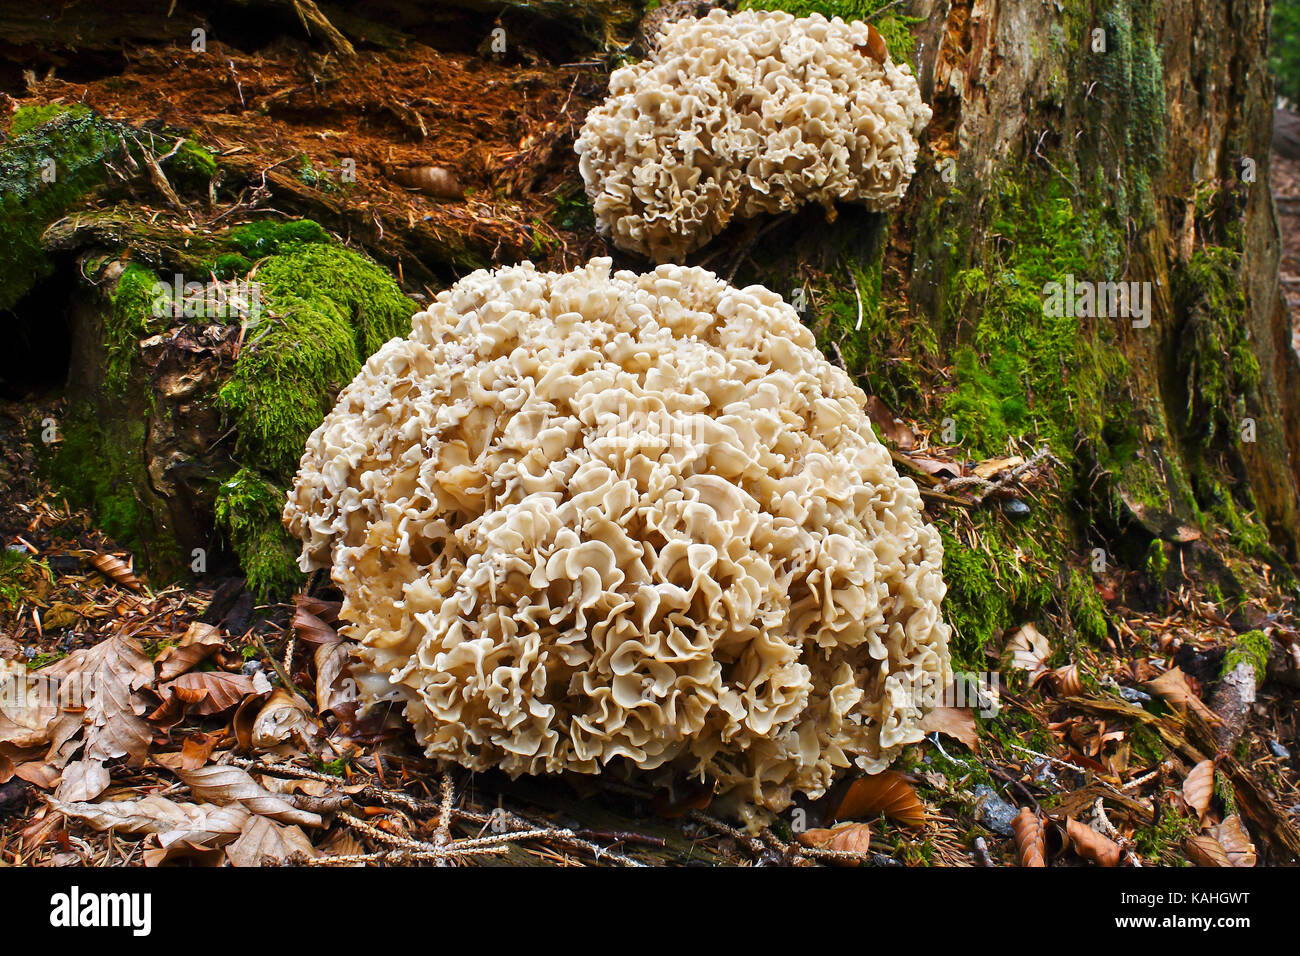 Holz oder Holz Blumenkohl Blumenkohl Pilz Pilz (Sparassis crispa) auf morschen Baumstamm, Nationalpark Bayerischer Wald Stockfoto